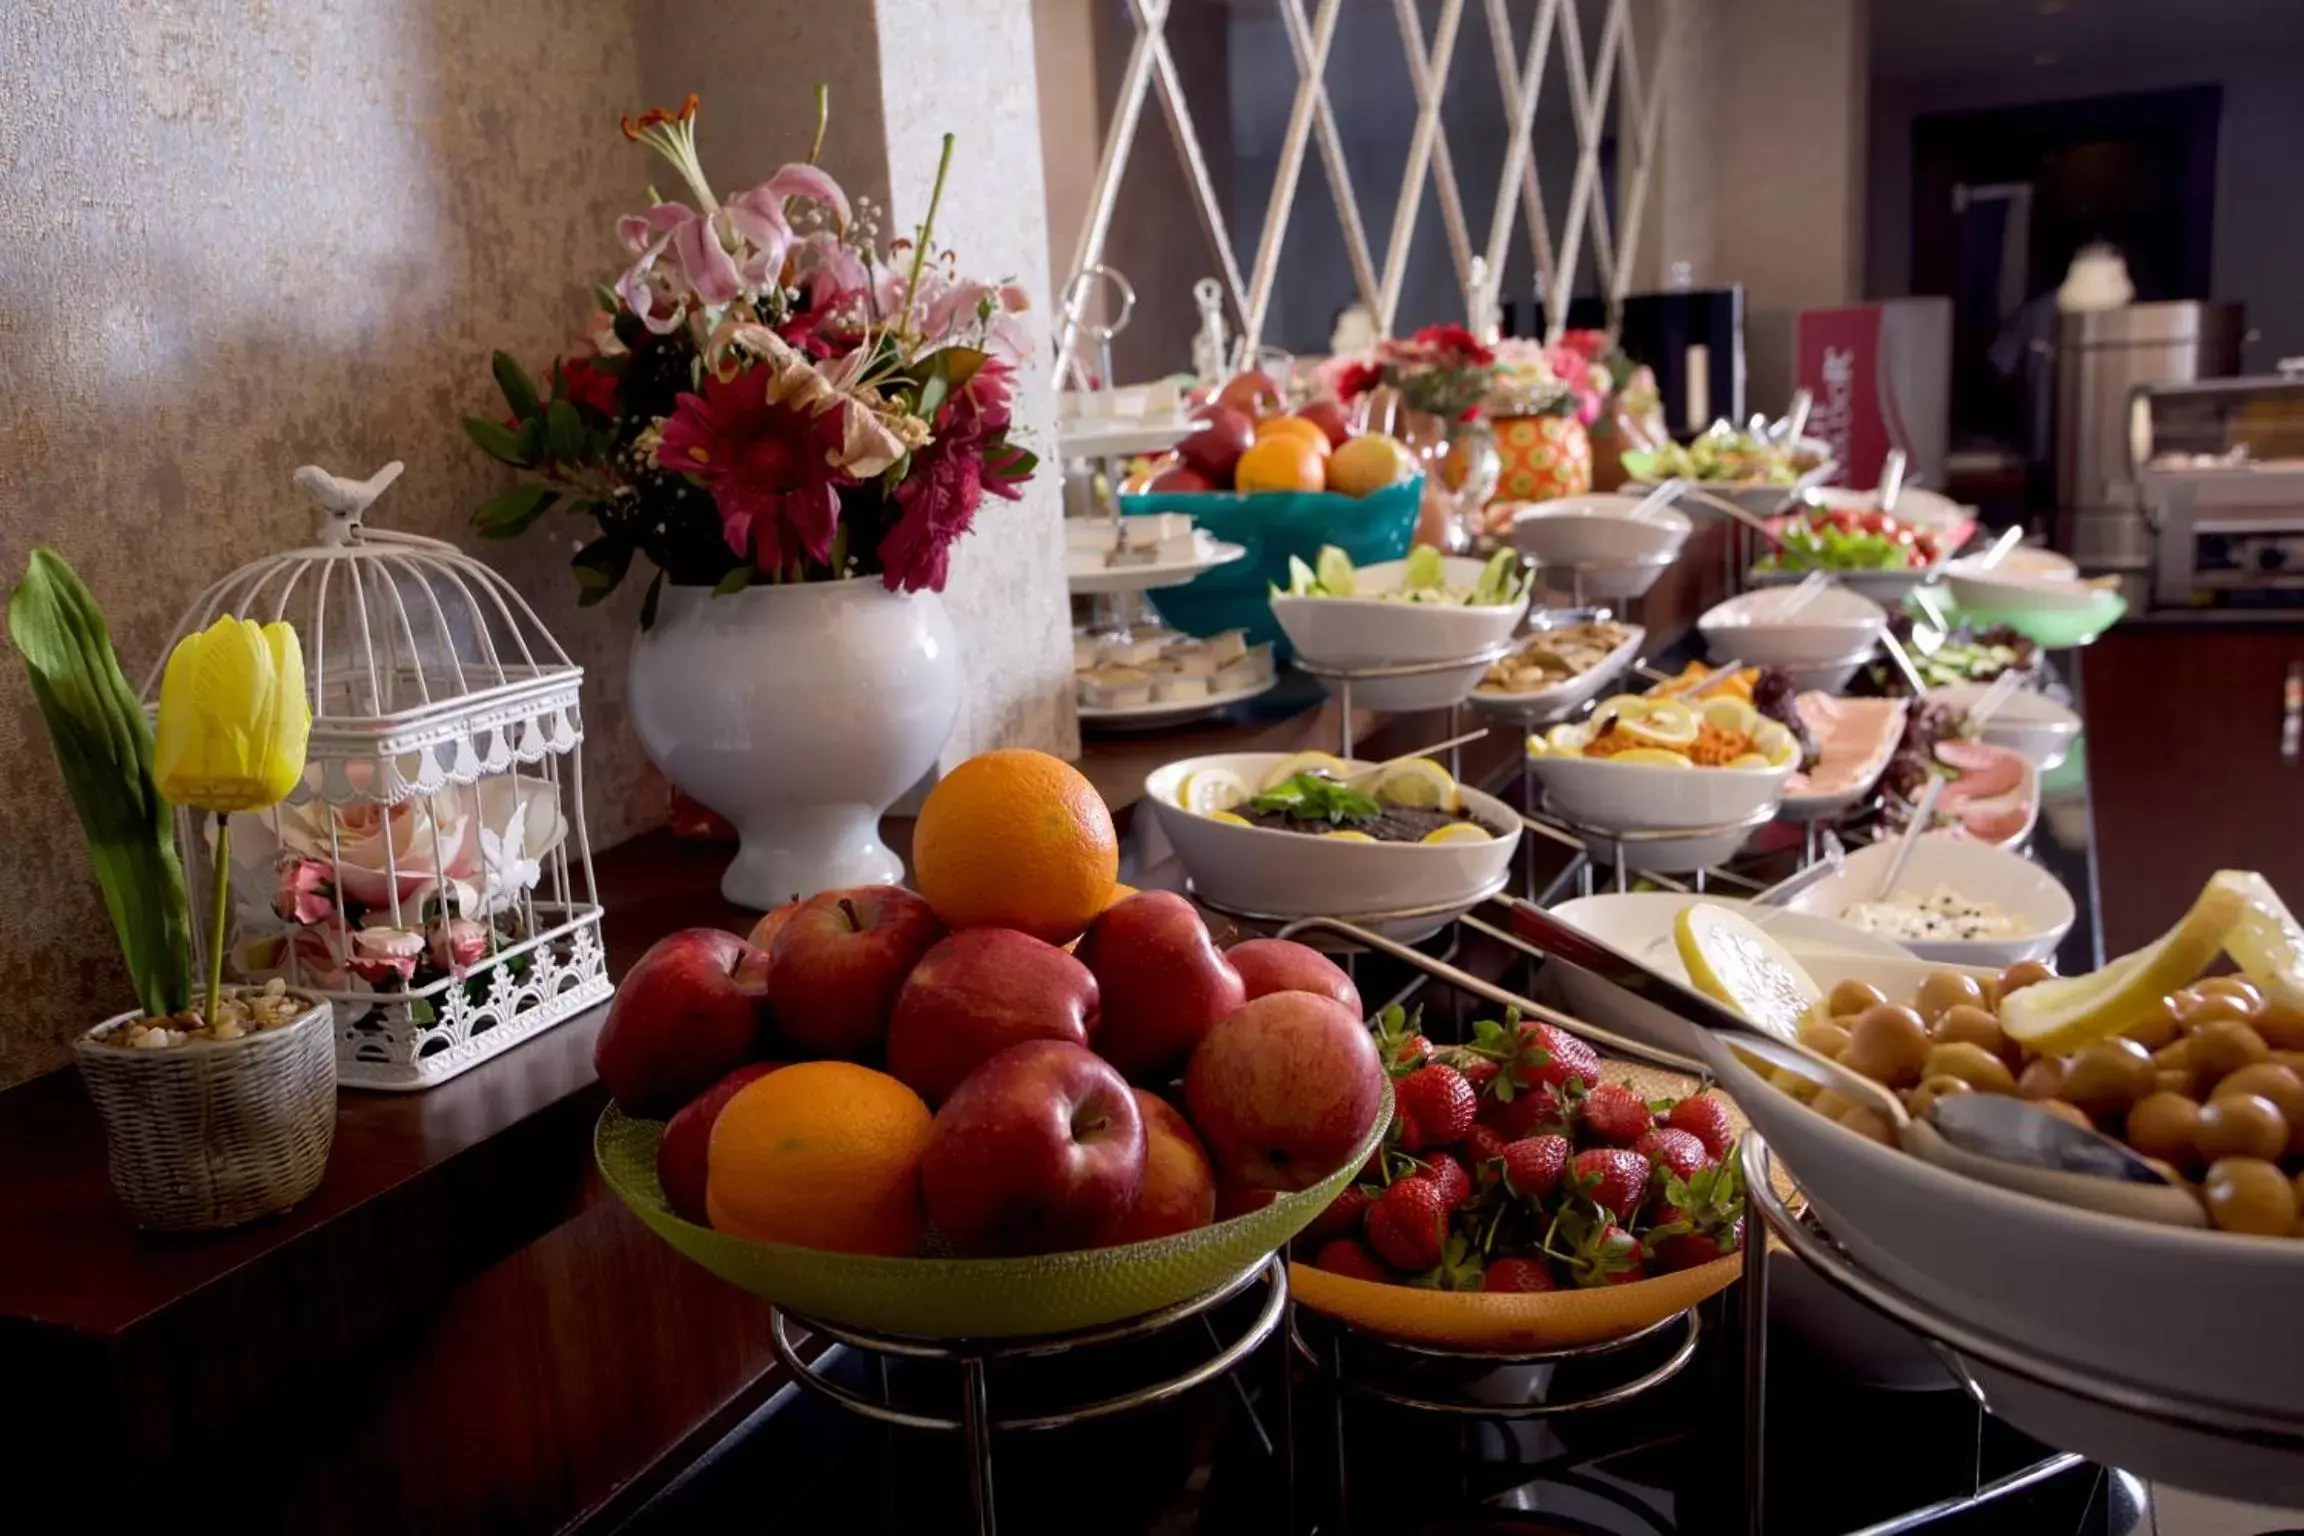 Buffet breakfast in Edibe Sultan Hotel